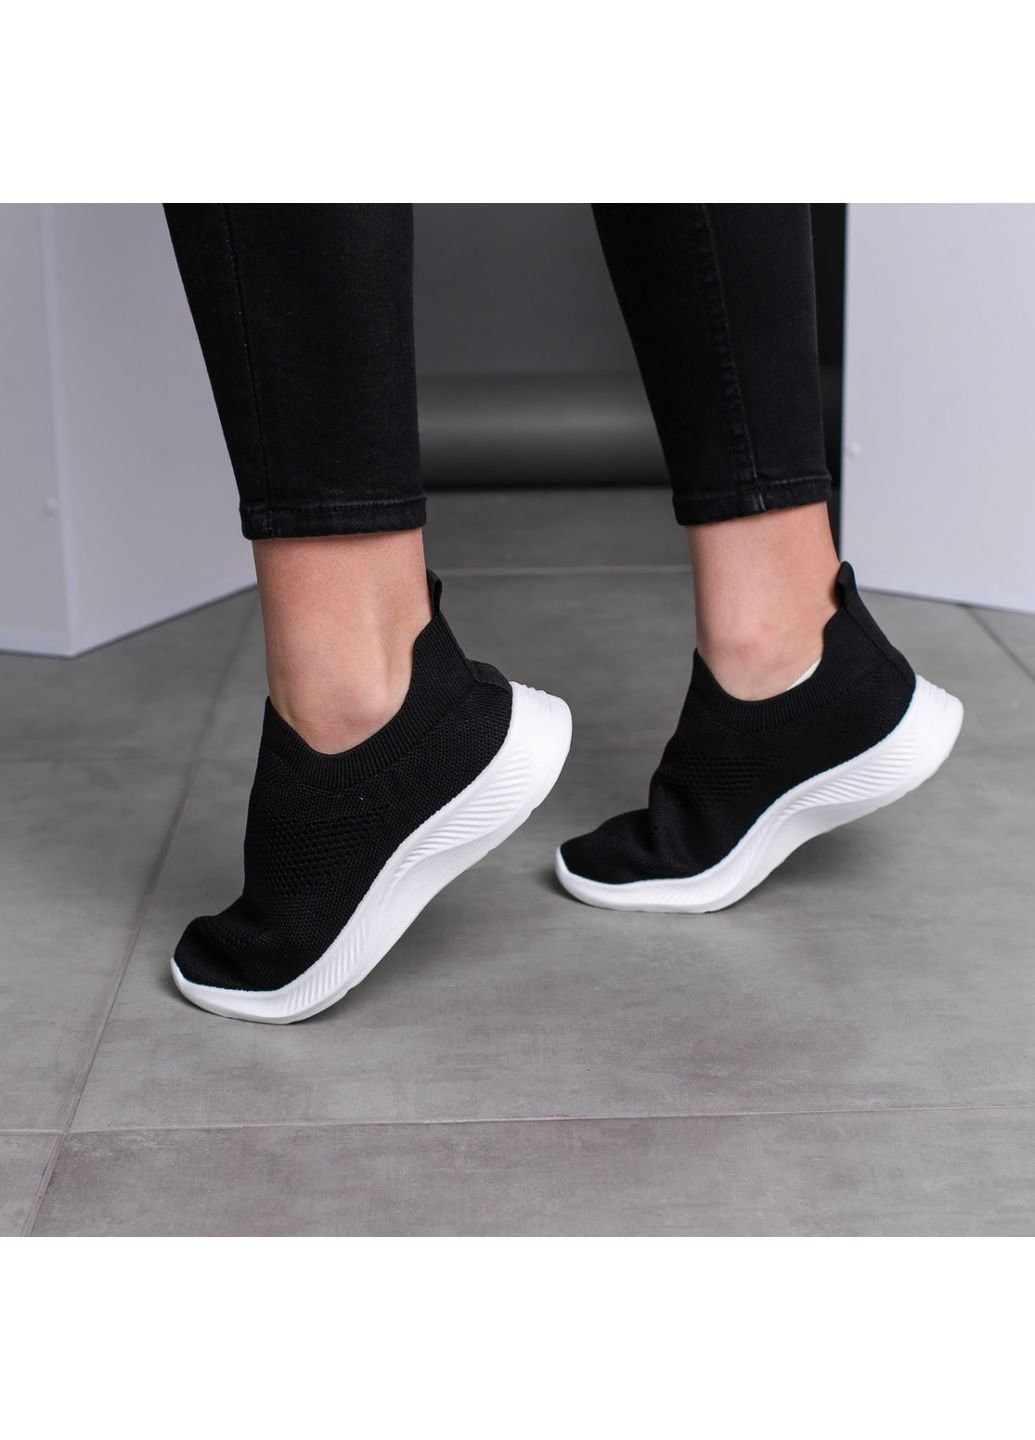 Чорні осінні кросівки жіночі sassy 3543 40 25,5 см чорний Fashion